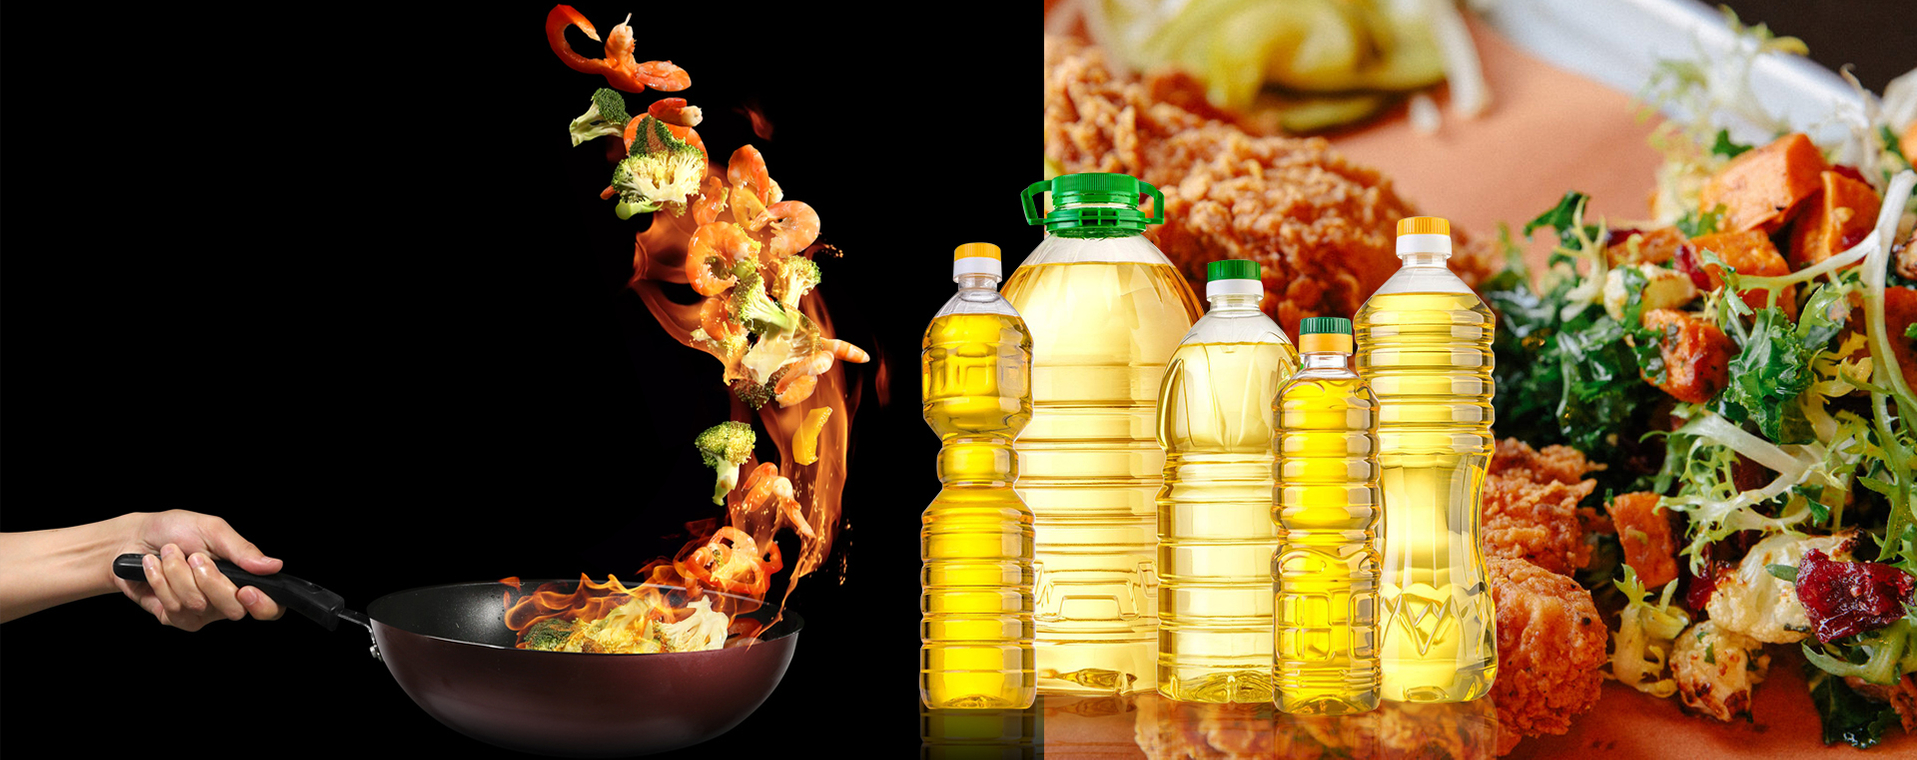 Food bottle, edible oil bottle